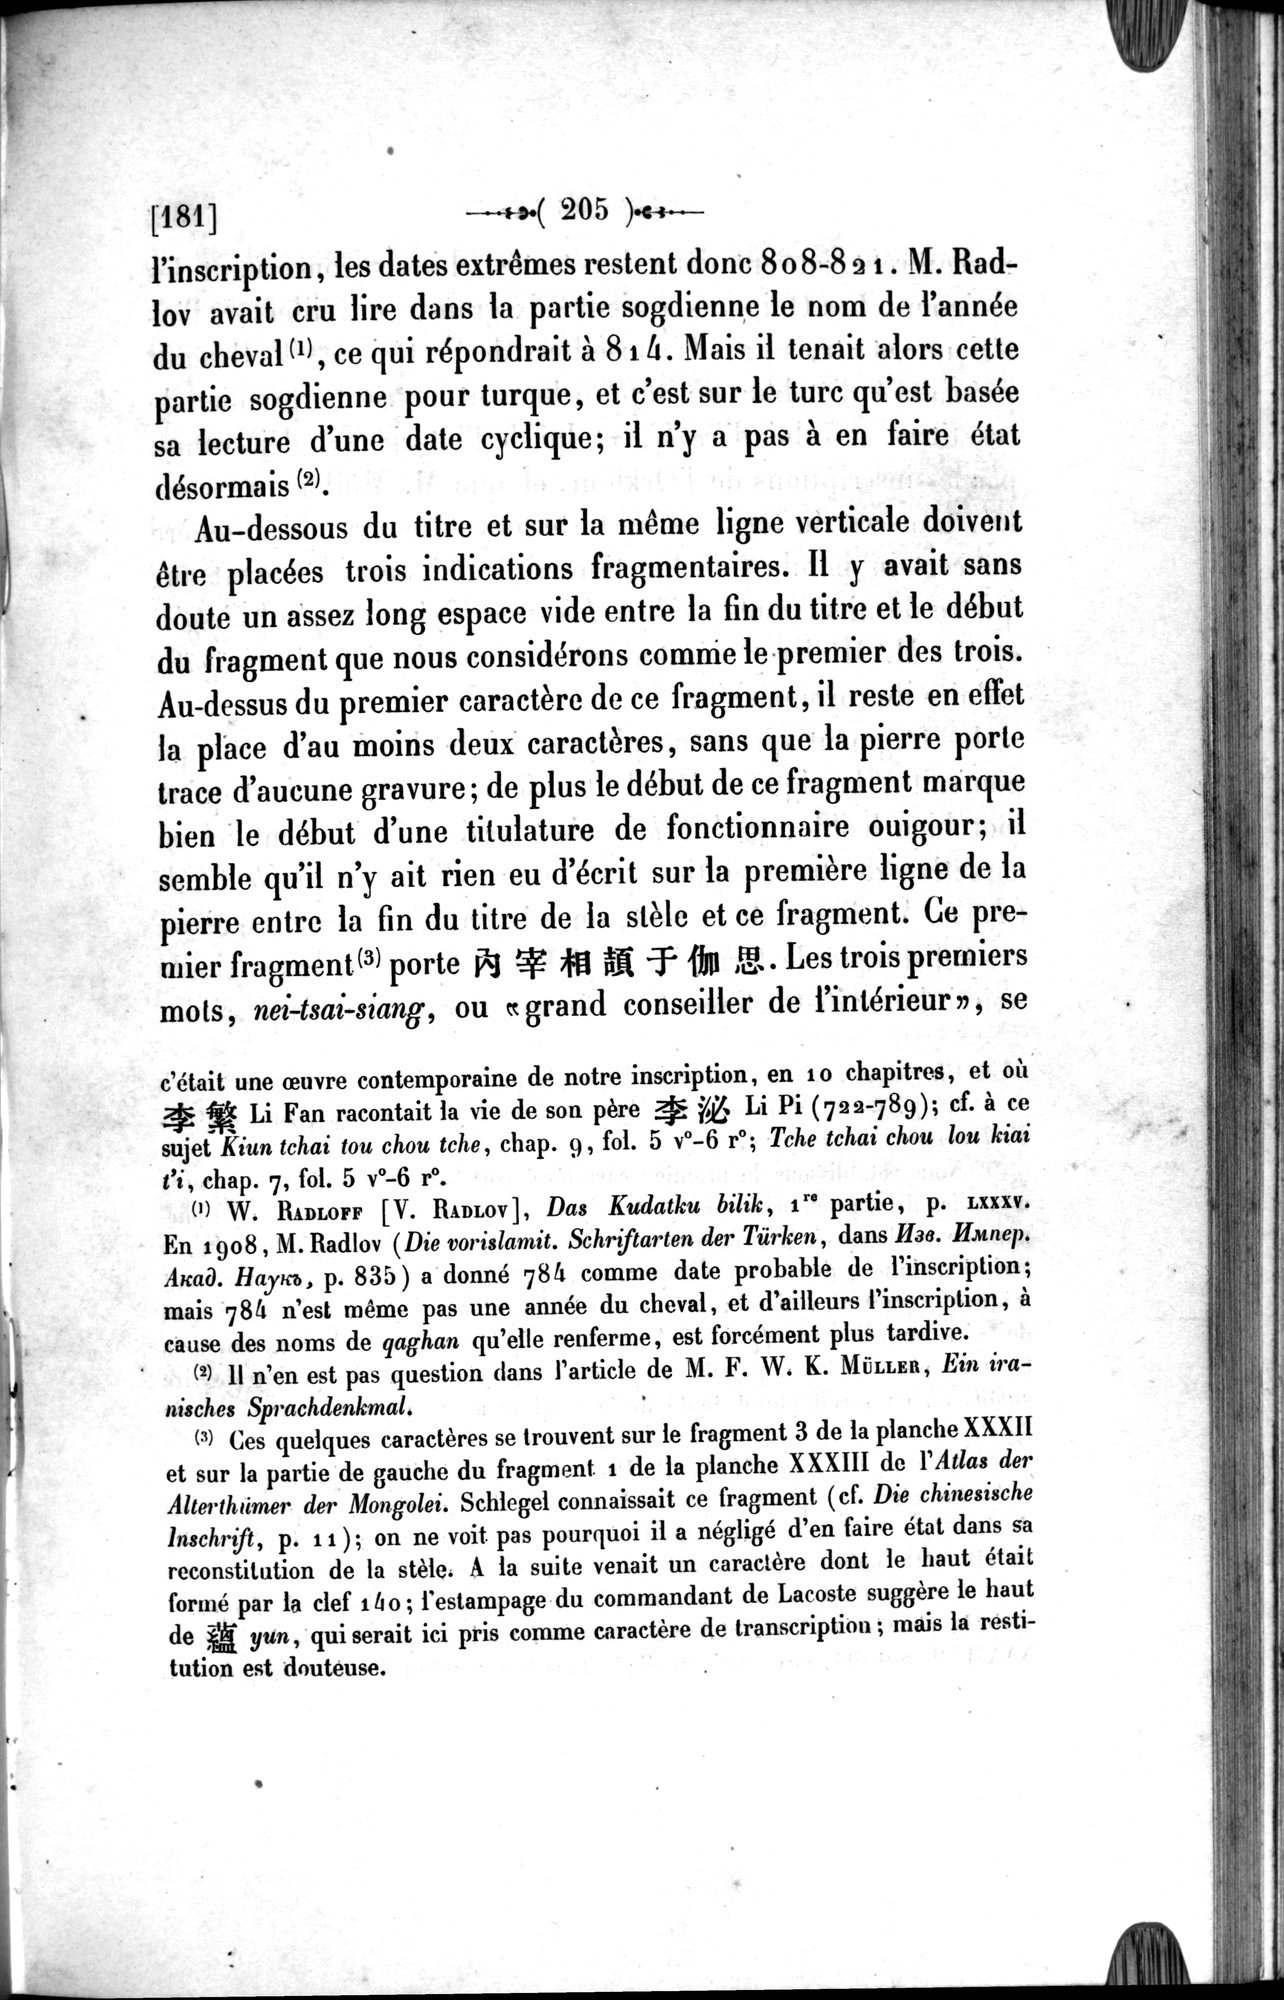 Un traité manichéen retrouvé en Chine : vol.1 / Page 215 (Grayscale High Resolution Image)